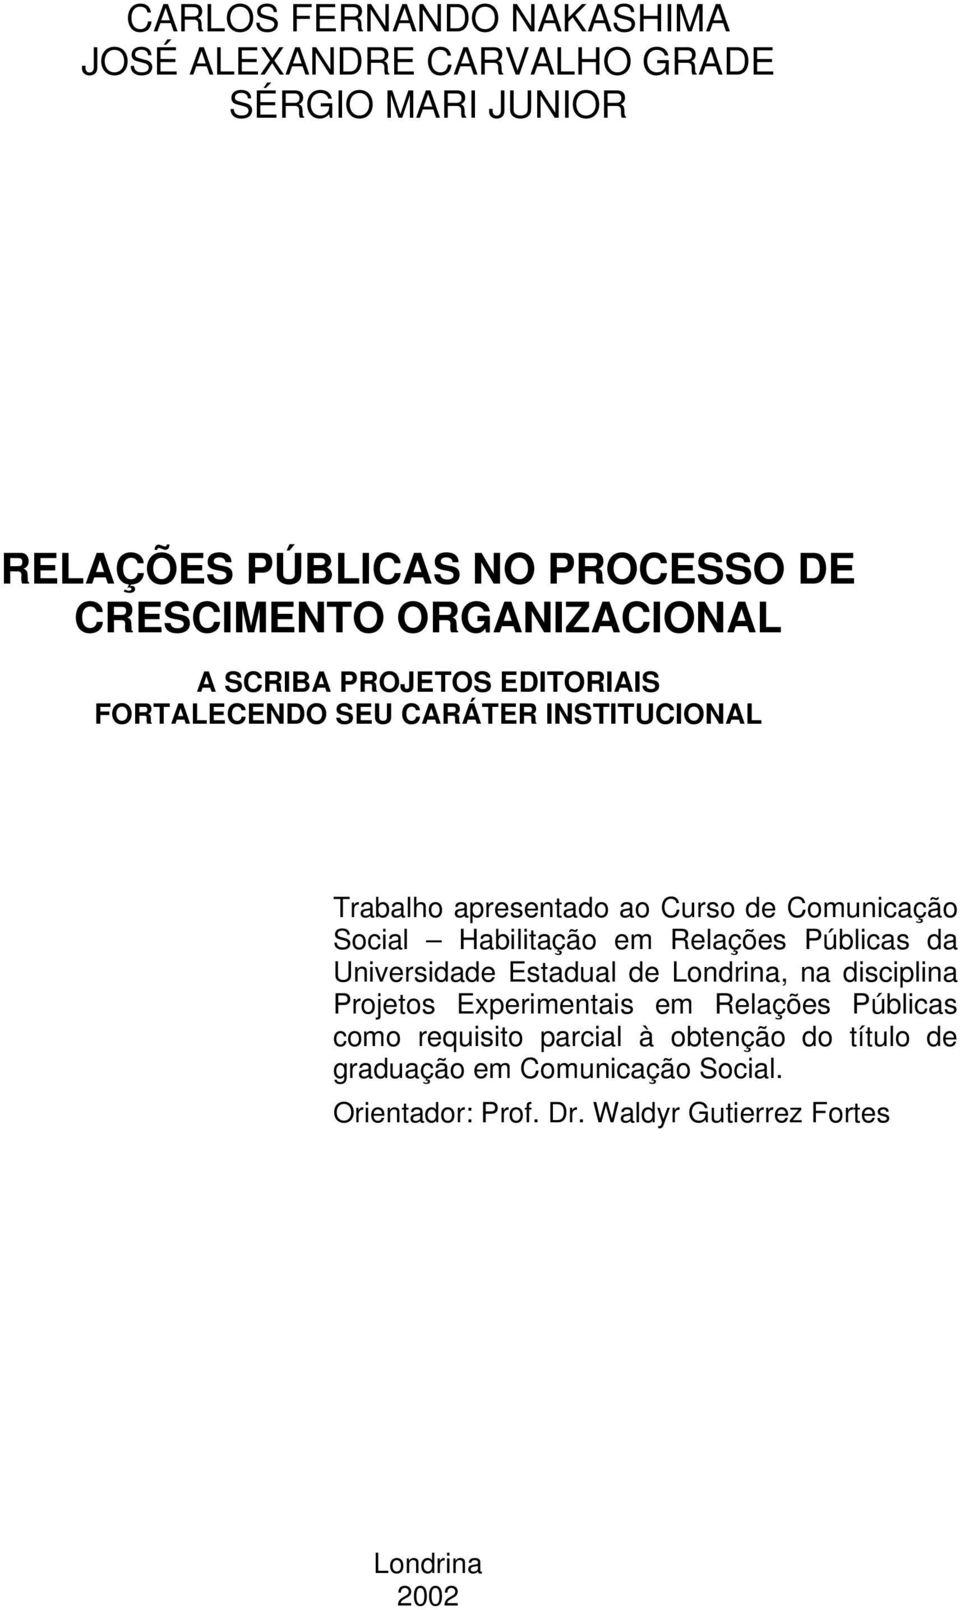 Social Habilitação em Relações Públicas da Universidade Estadual de Londrina, na disciplina Projetos Experimentais em Relações